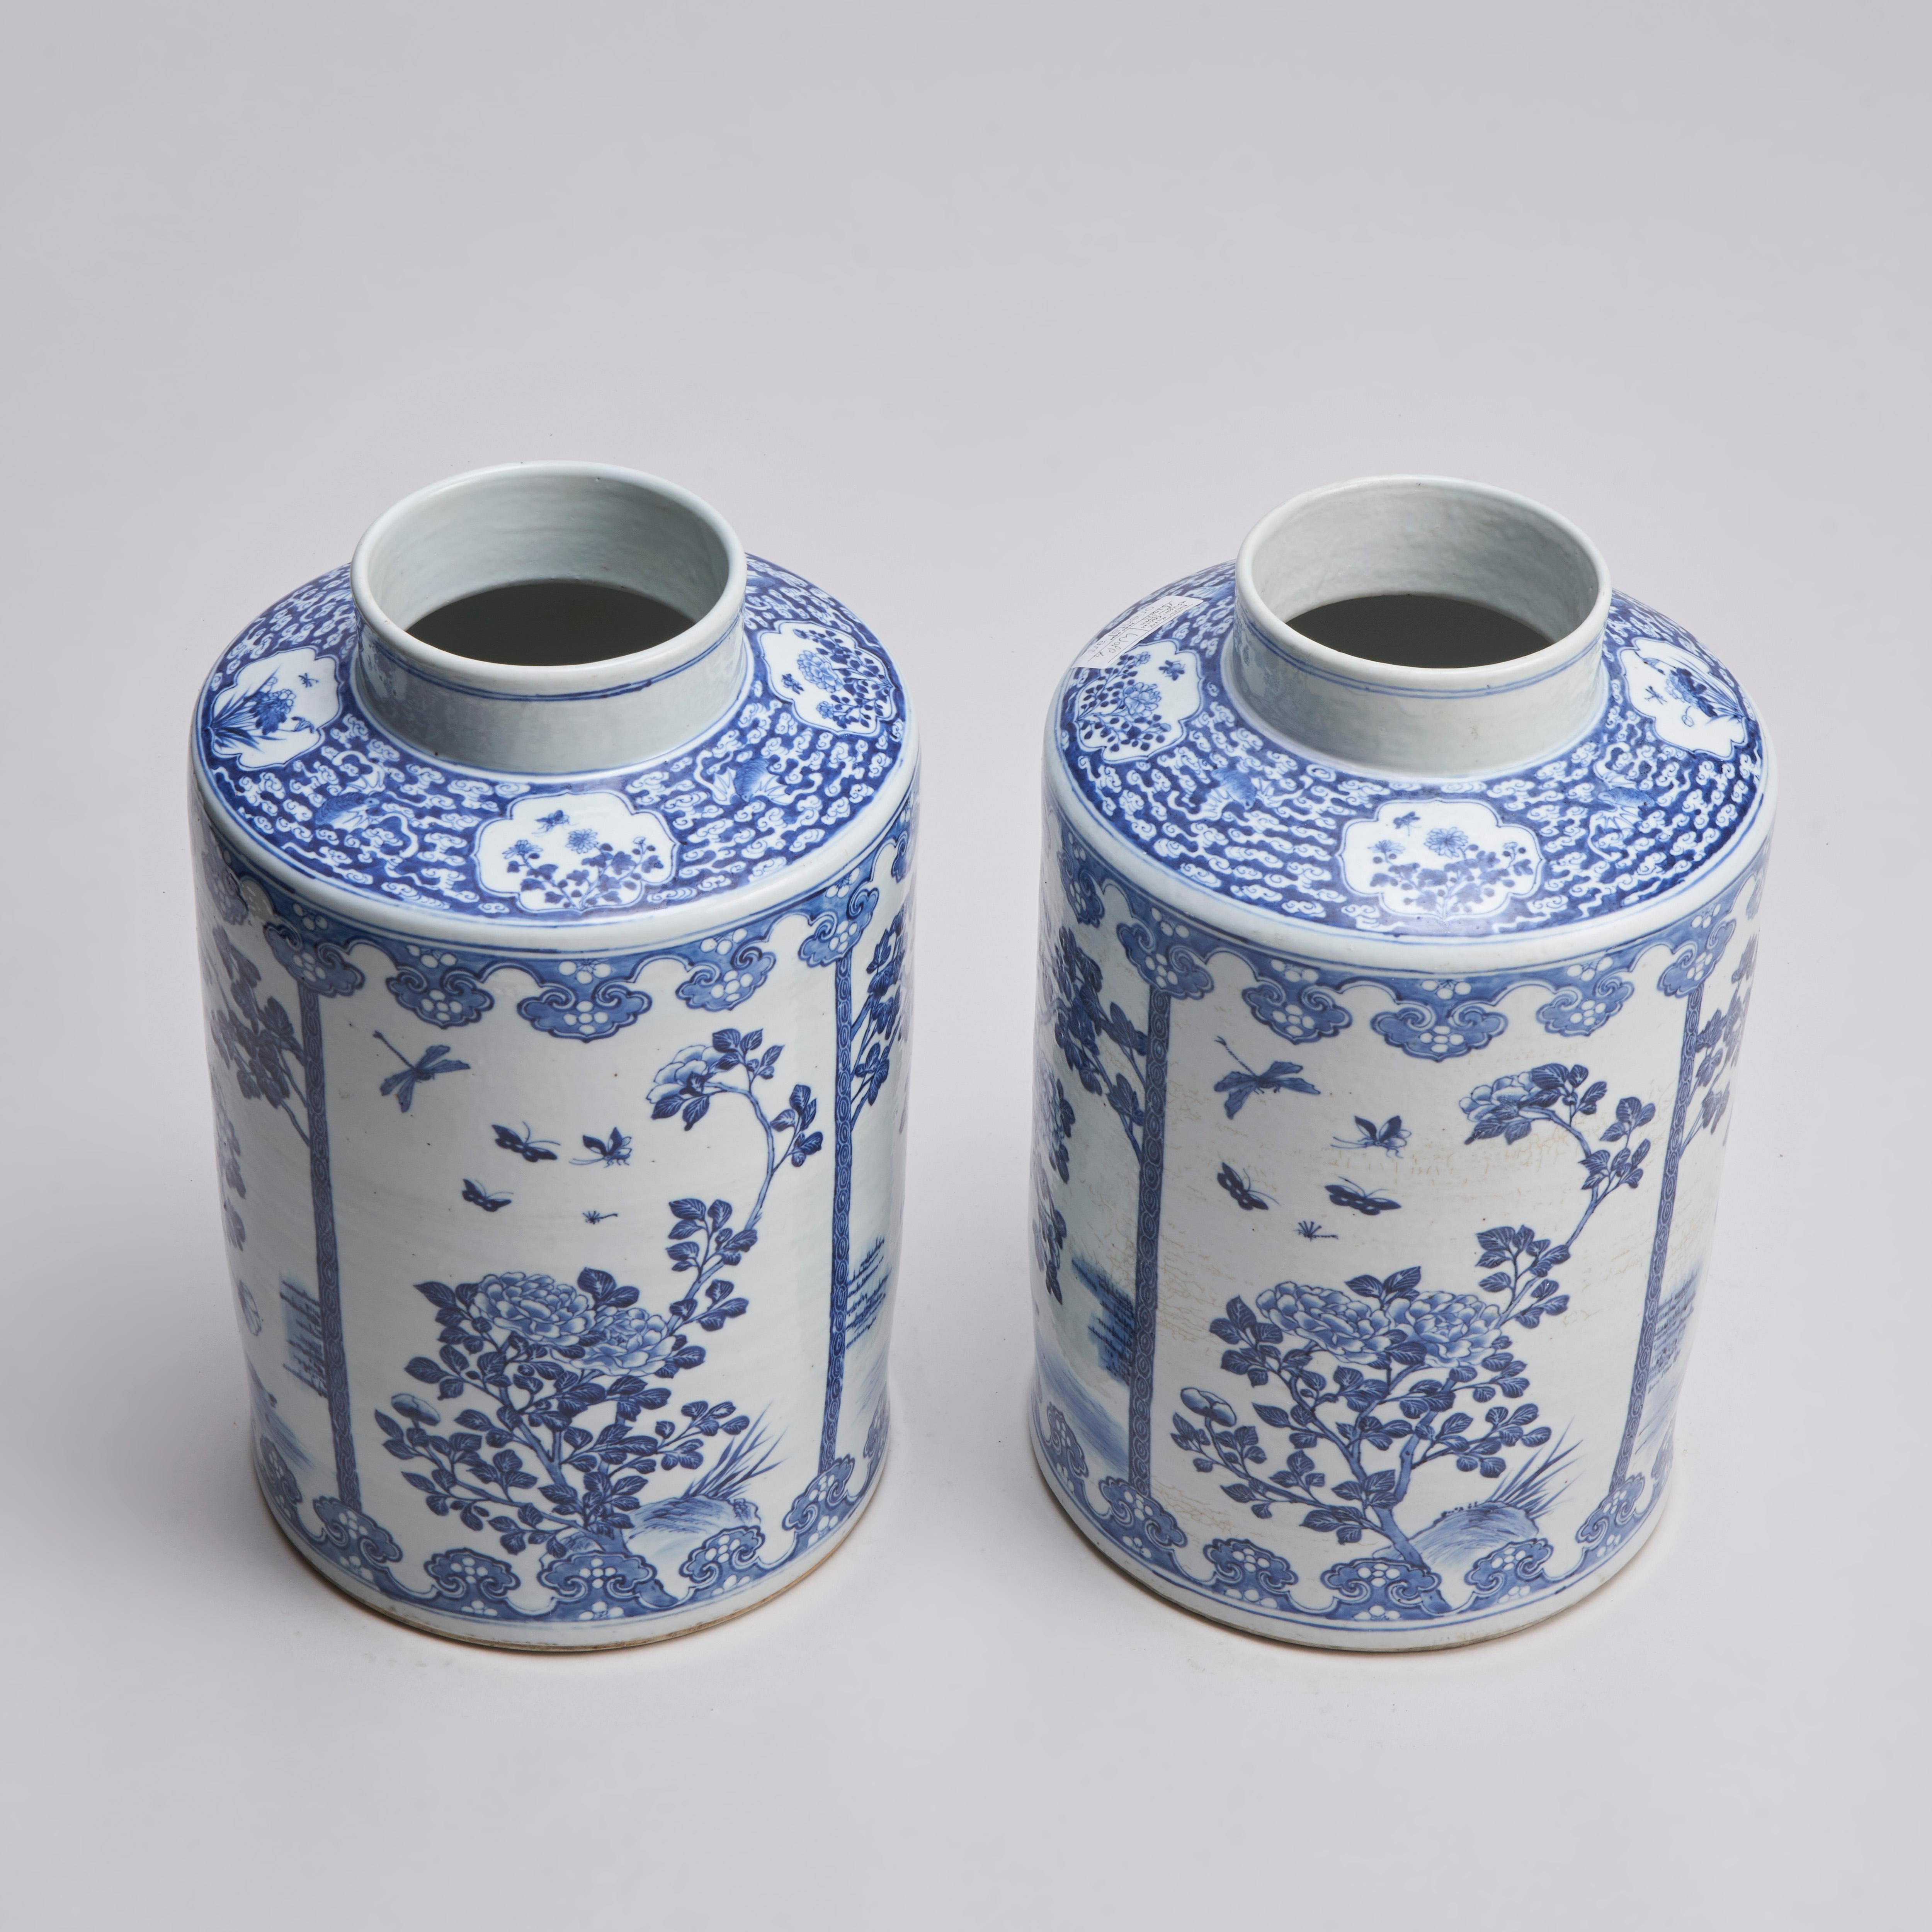 Paire de boîtes de conserve chinoises bleu et blanc du XIXe siècle, finement décorées de panneaux de pivoines en fleurs, l'un au-dessus d'une mare aux canards, l'autre avec des papillons et des libellules qui tournent en rond.

Le col est orné d'un